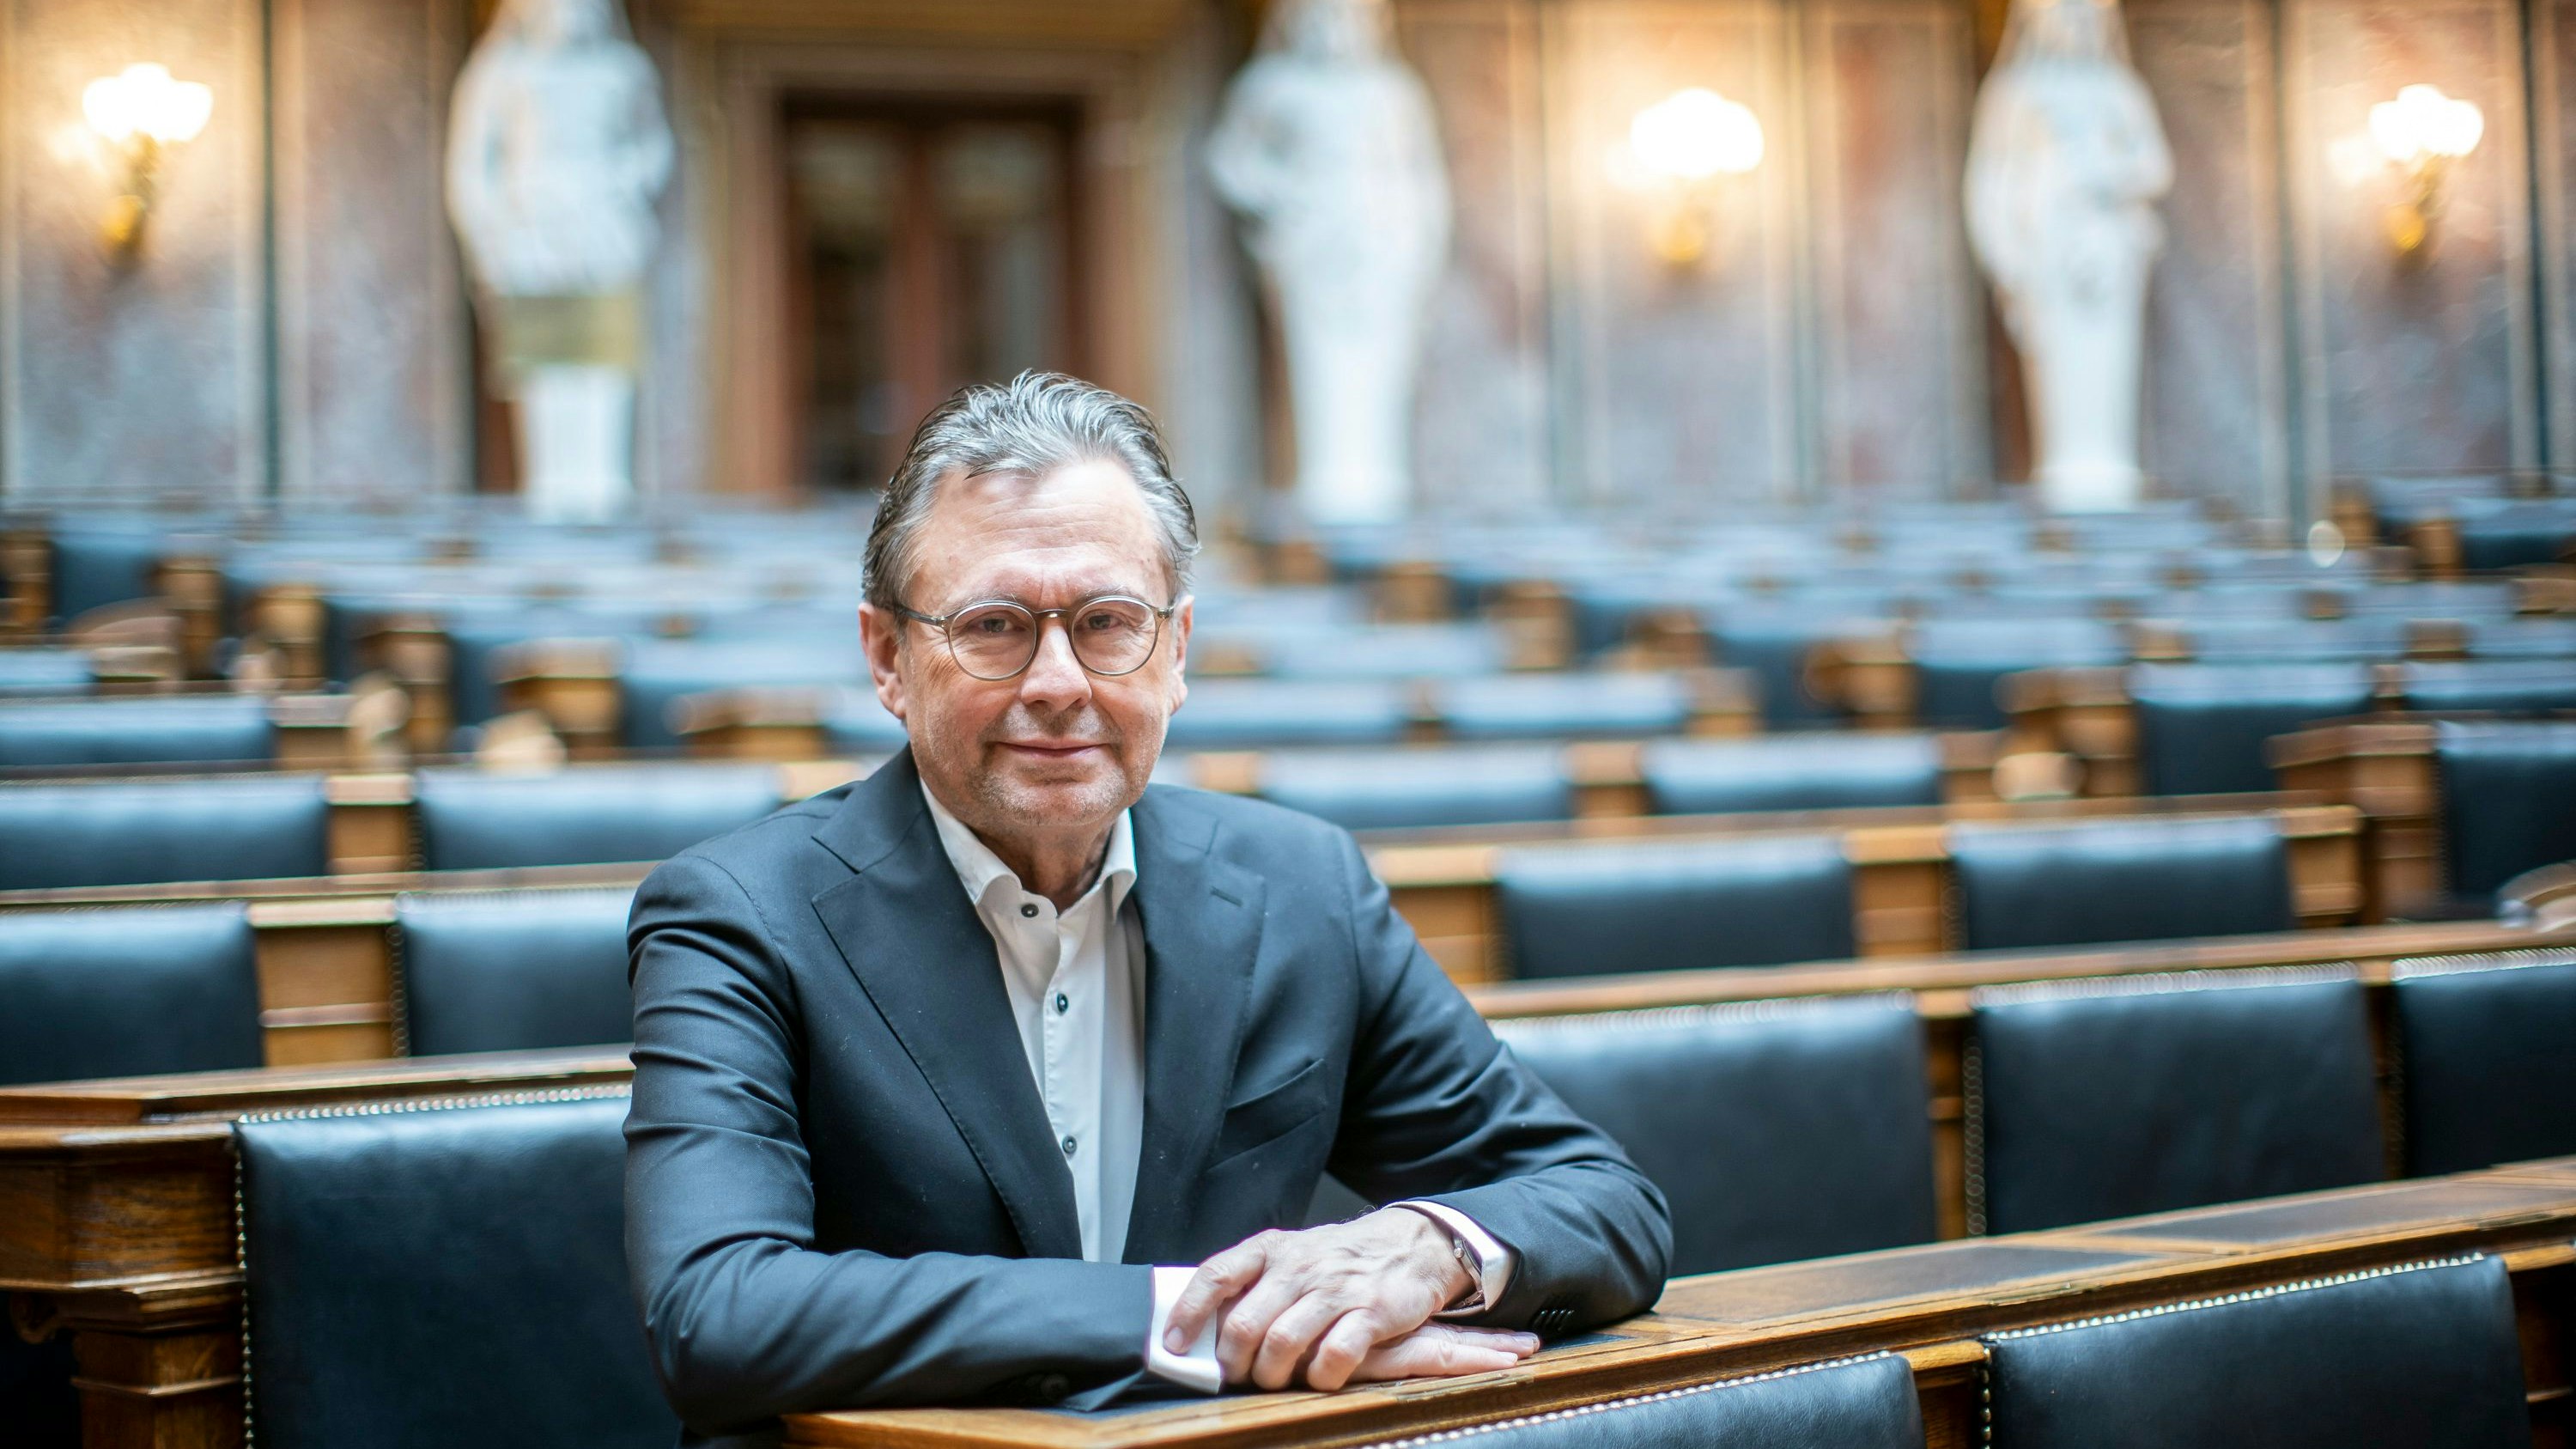 Alexander Wrabetz war von 2007 bis 2021 Generaldirektor des ORF. Seit November 2022 ist der studierte Jurist Präsident des SK Rapid